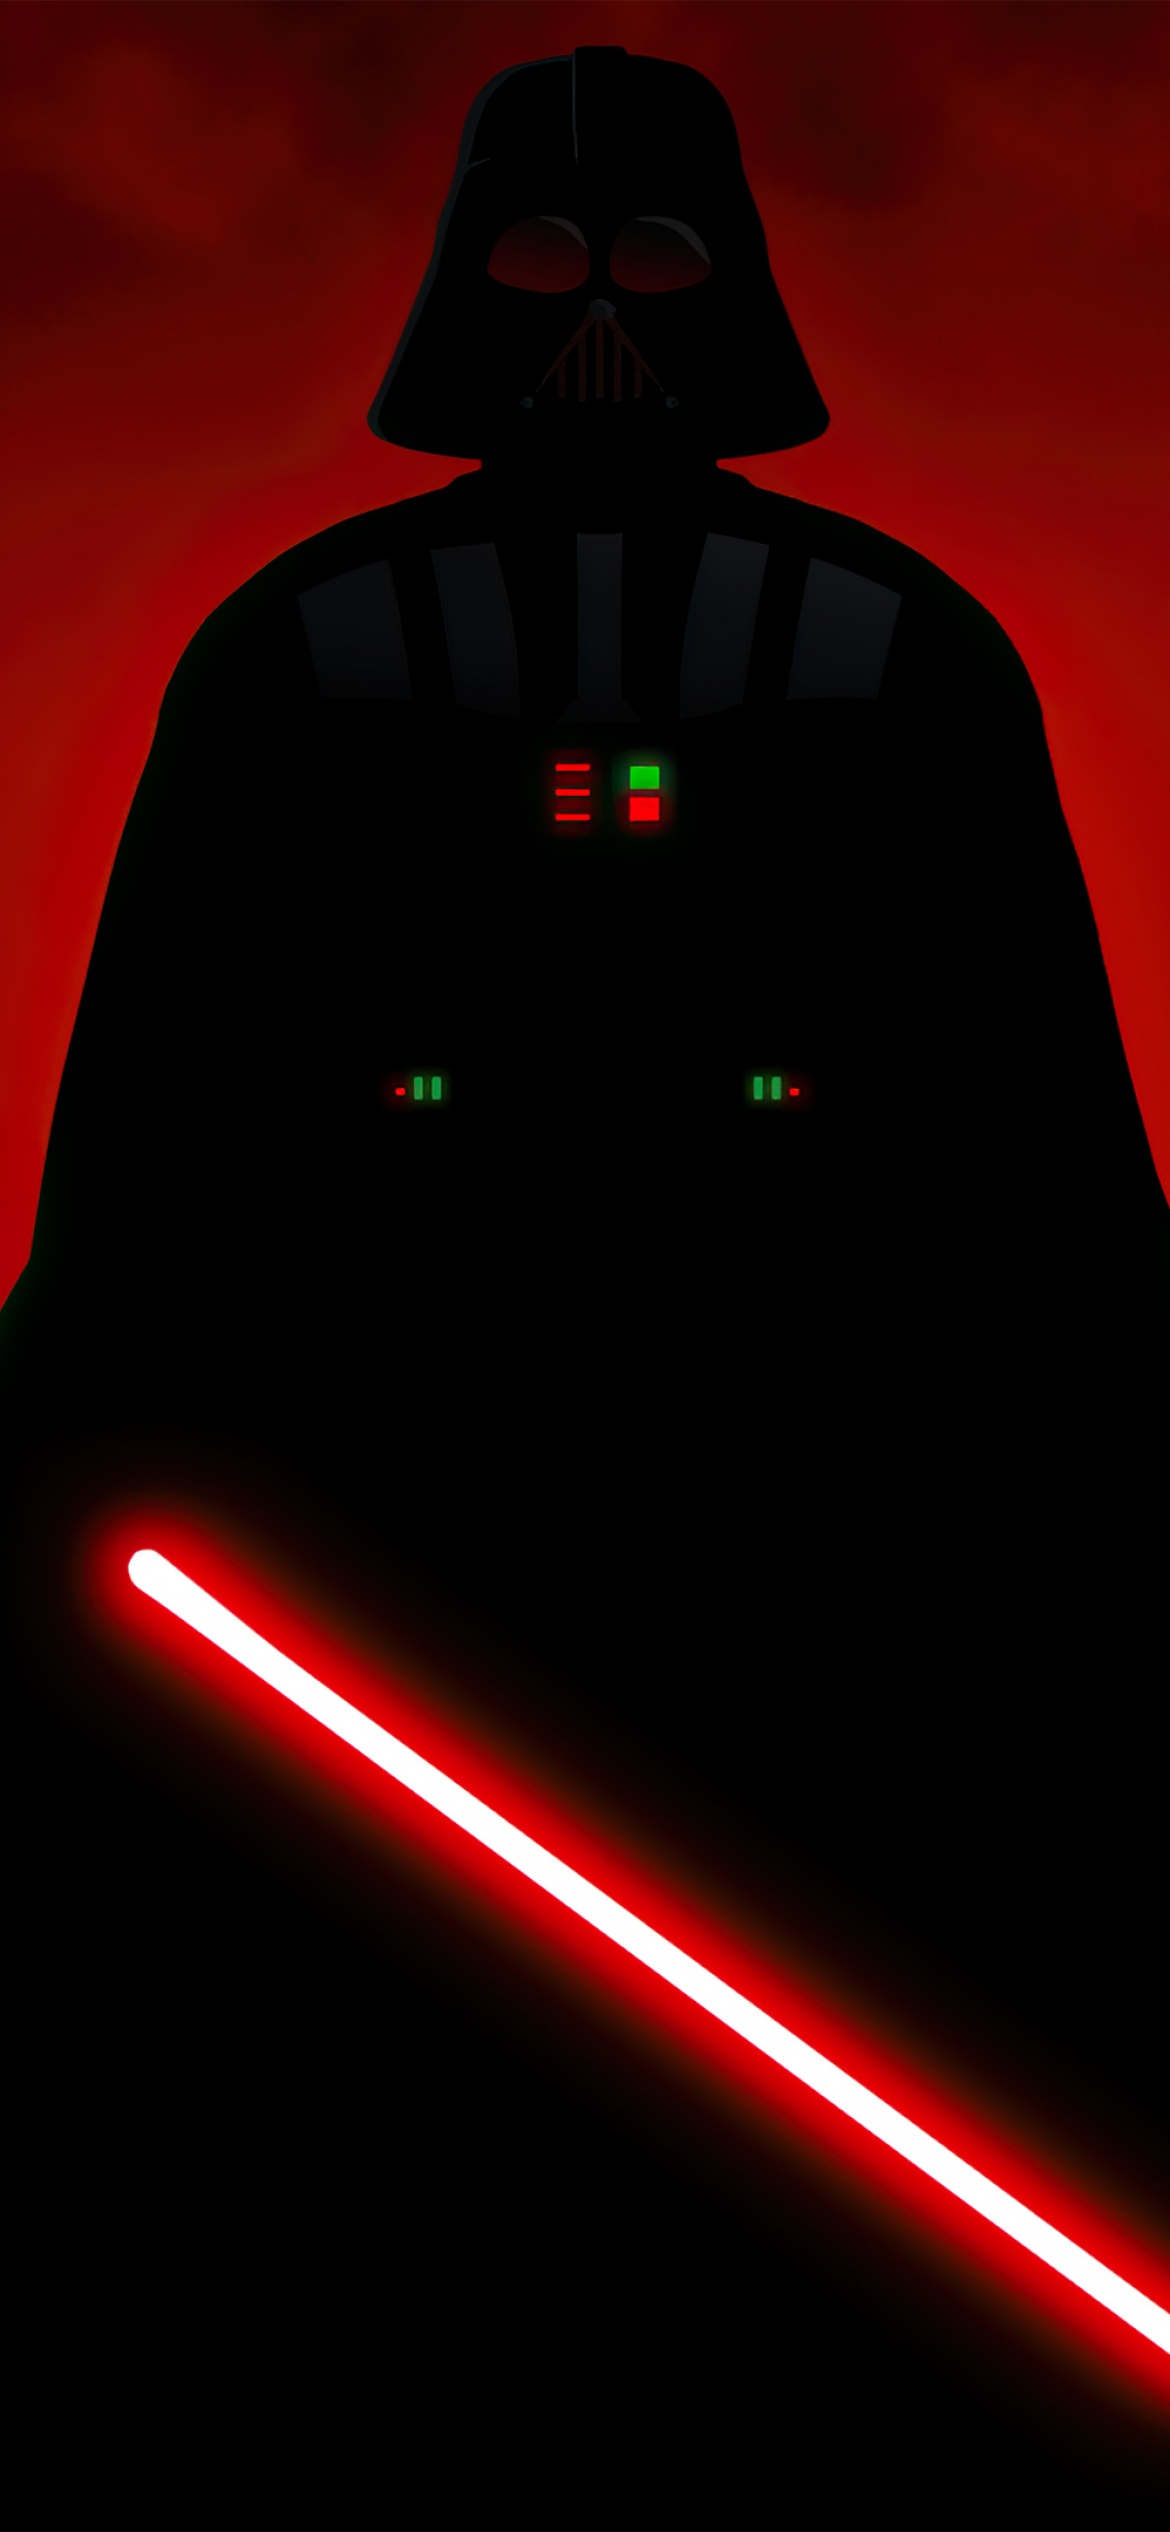 Với độ phân giải 4K, hình nền iPhone Darth Vader với ánh sáng của thanh kiếm sẽ tạo nên một hiệu ứng tuyệt vời trên màn hình điện thoại của bạn. Chắc chắn đó là một điều kiện không thể bỏ lỡ đối với những fan của Darth Vader.